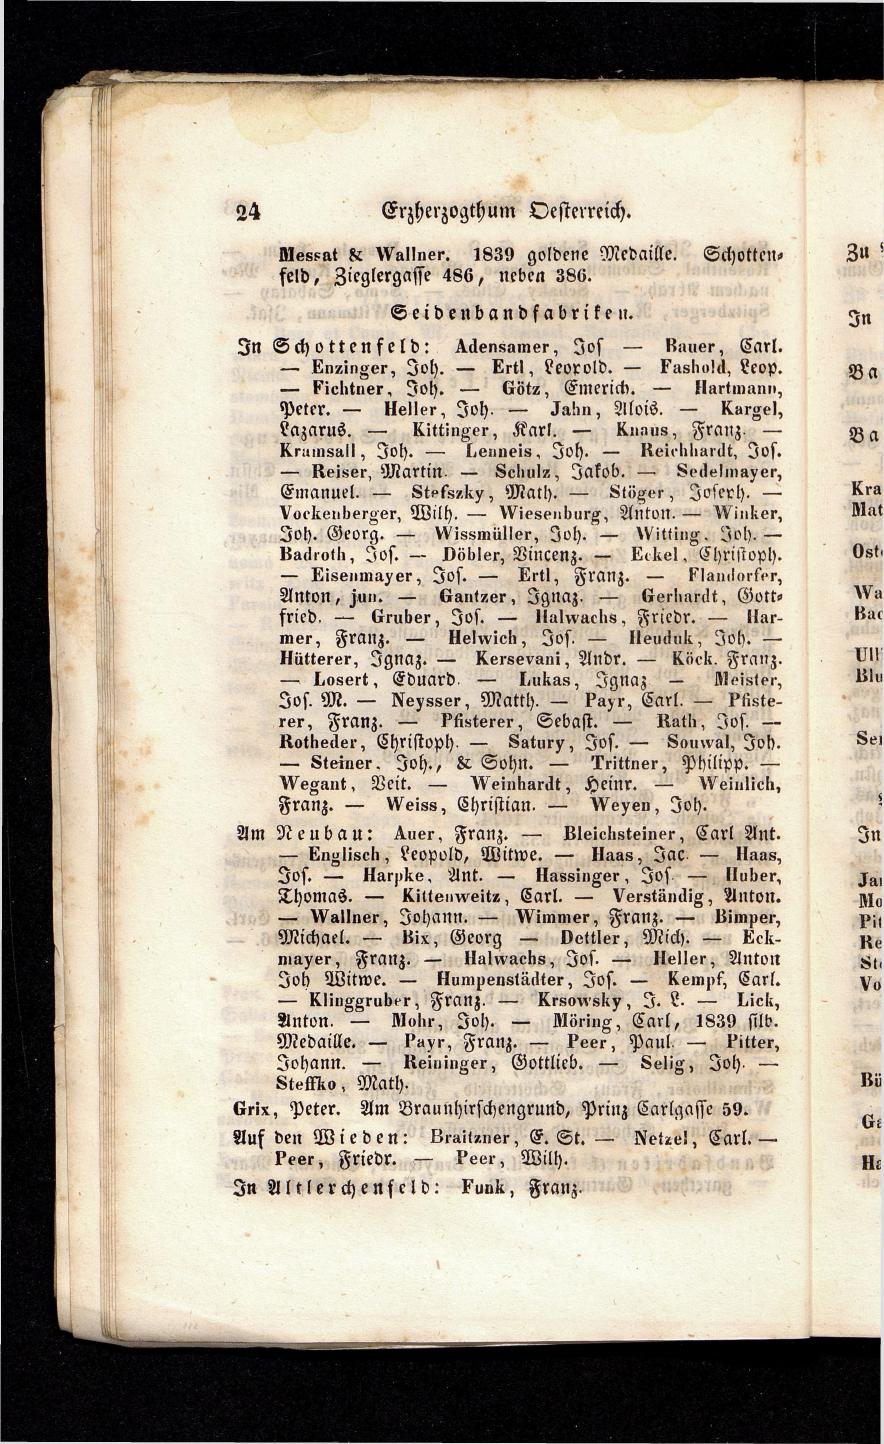 Grosses Adressbuch der Kaufleute. No. 13. Oesterreich ober u. unter der Enns 1844 - Seite 28